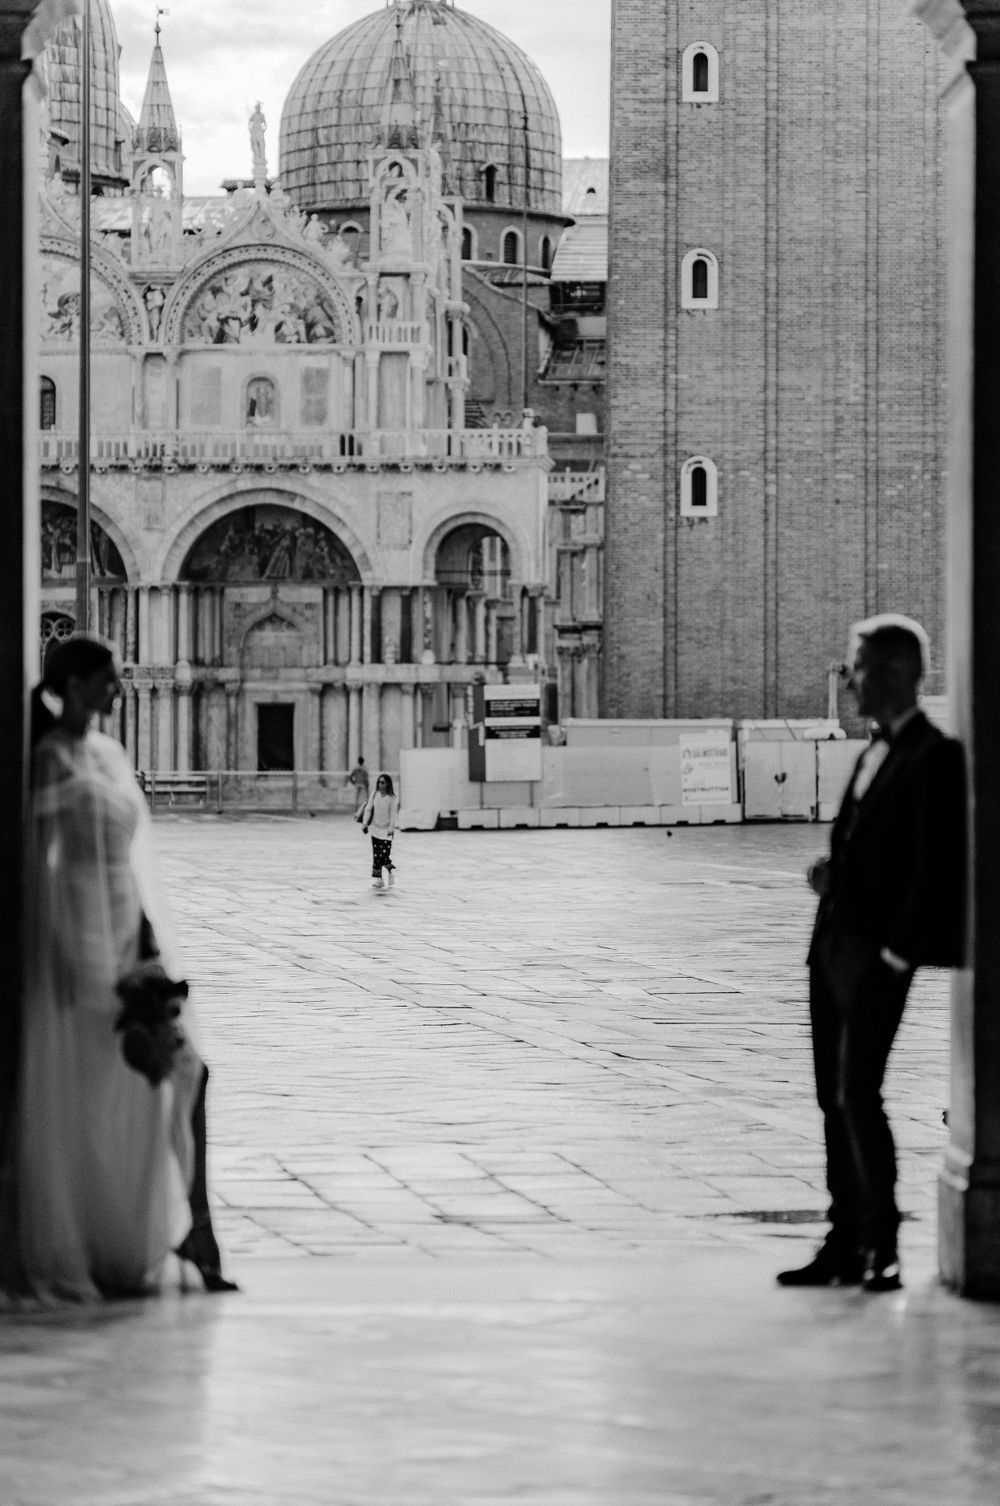 Roberto Shumski Destination Wedding Photography Videography